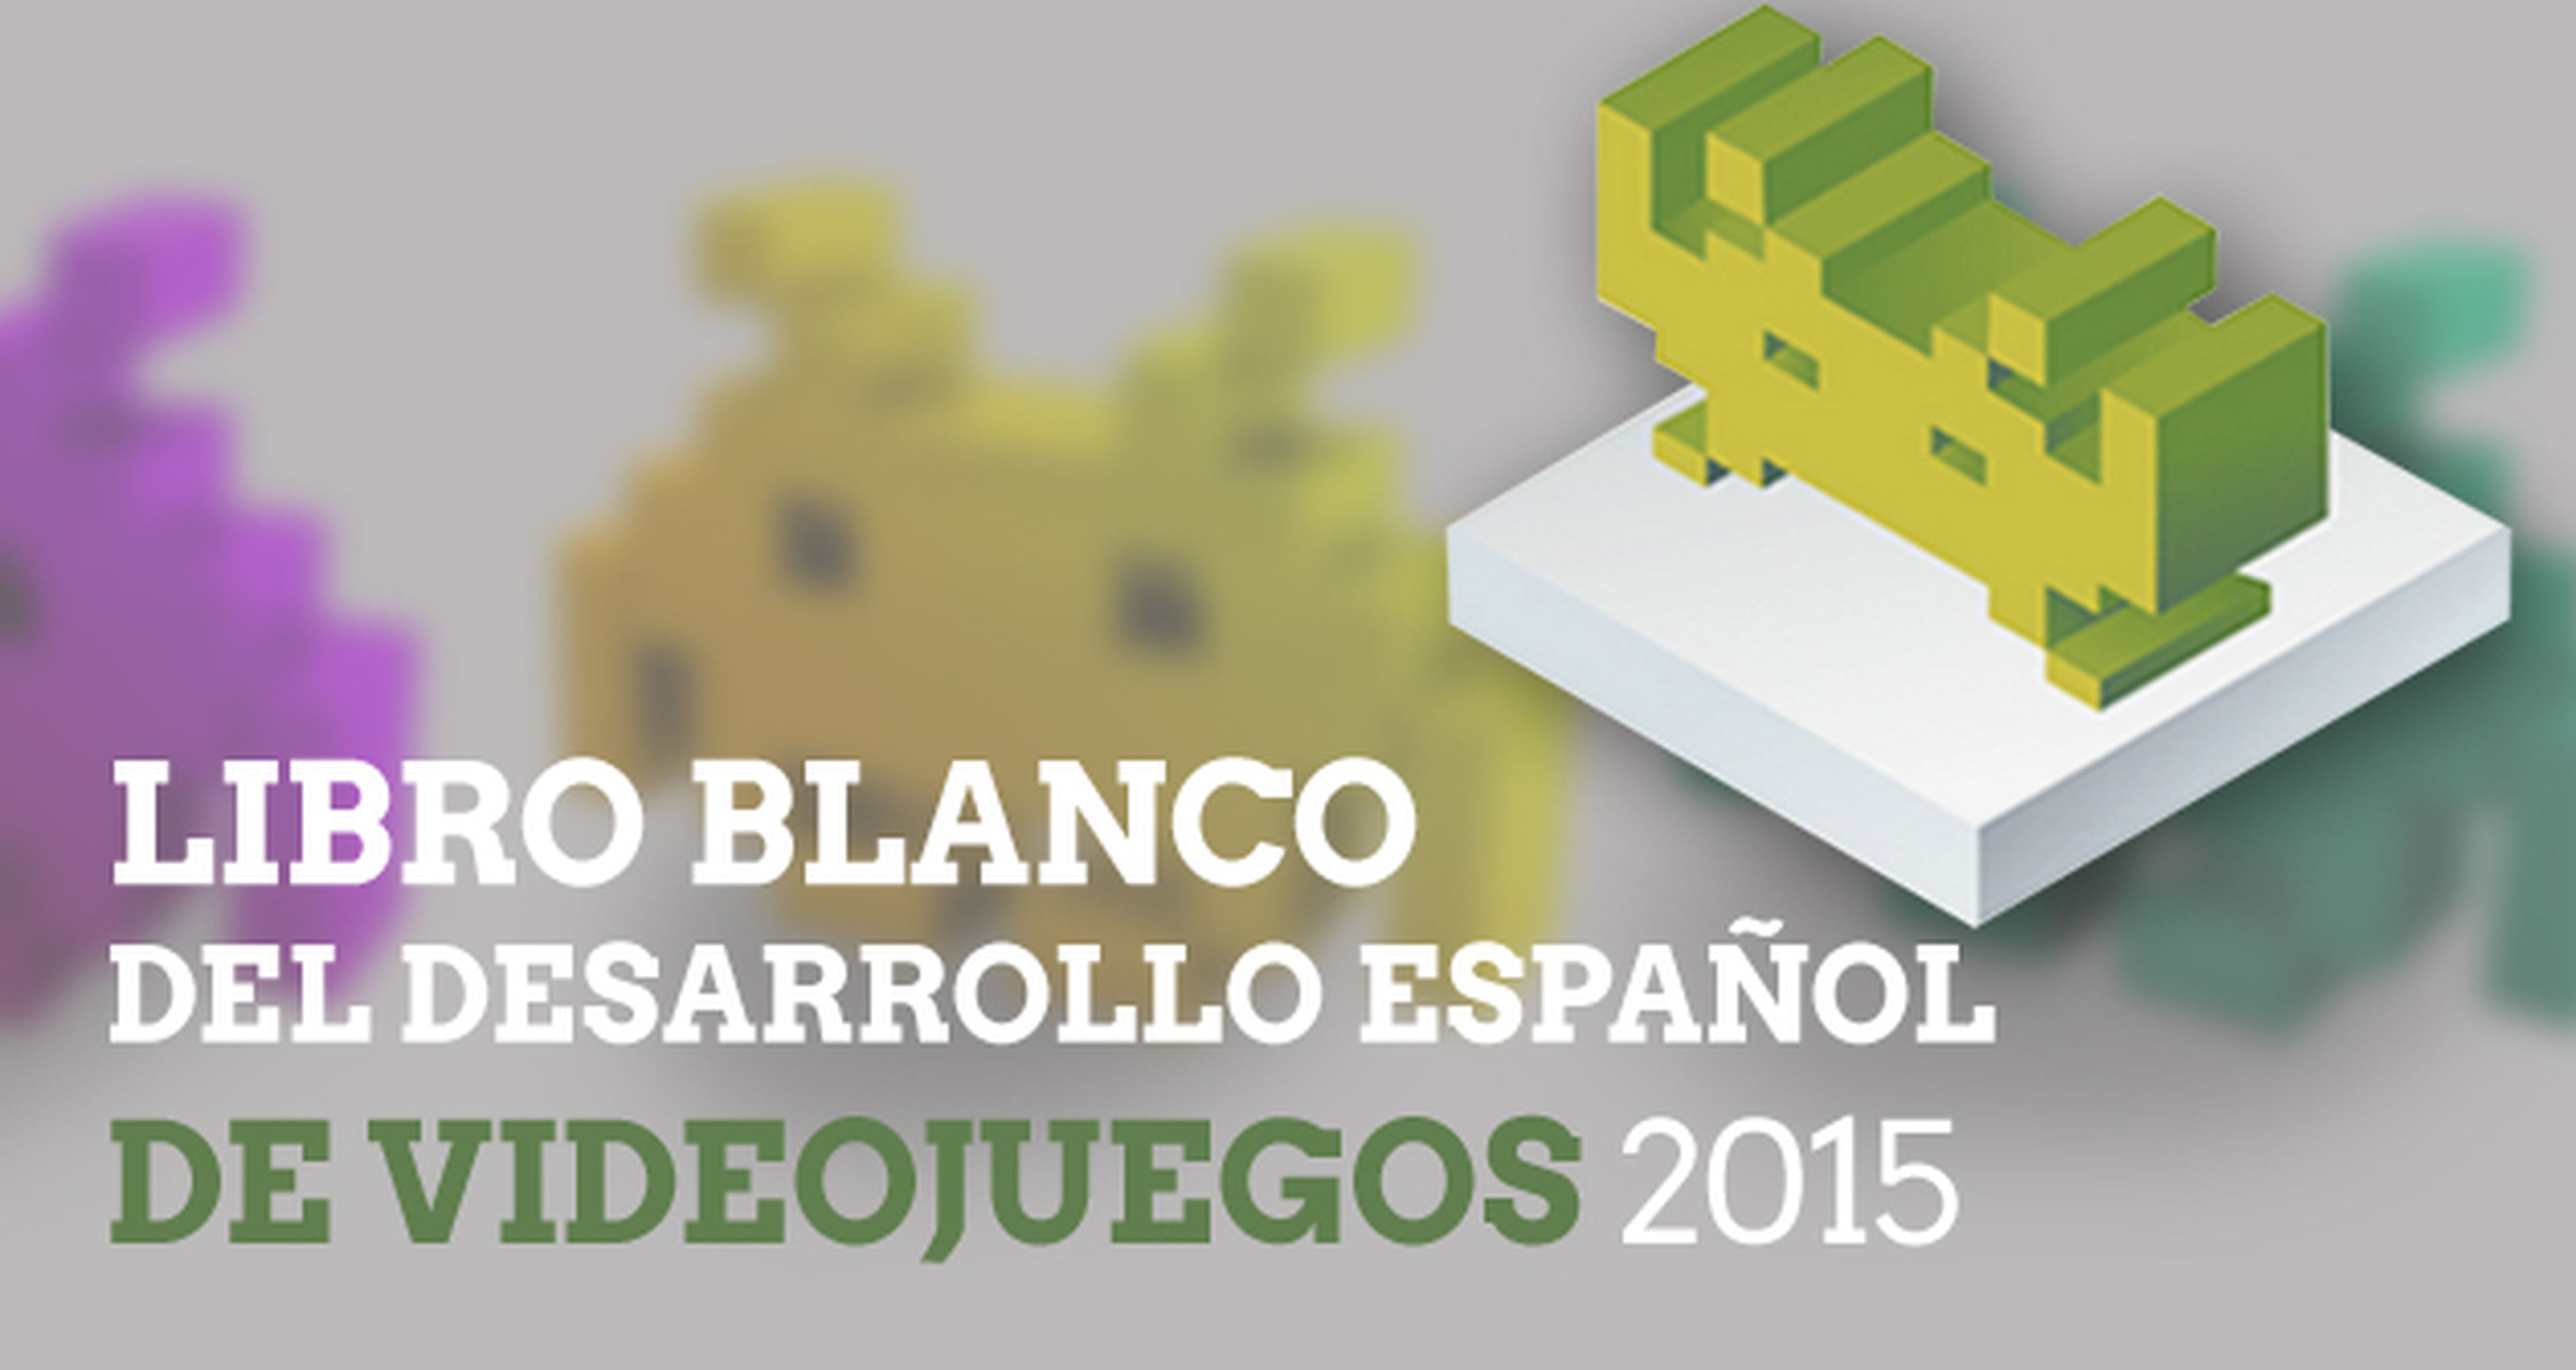 Presentado el Libro blanco del desarrollo español de videojuegos 2015